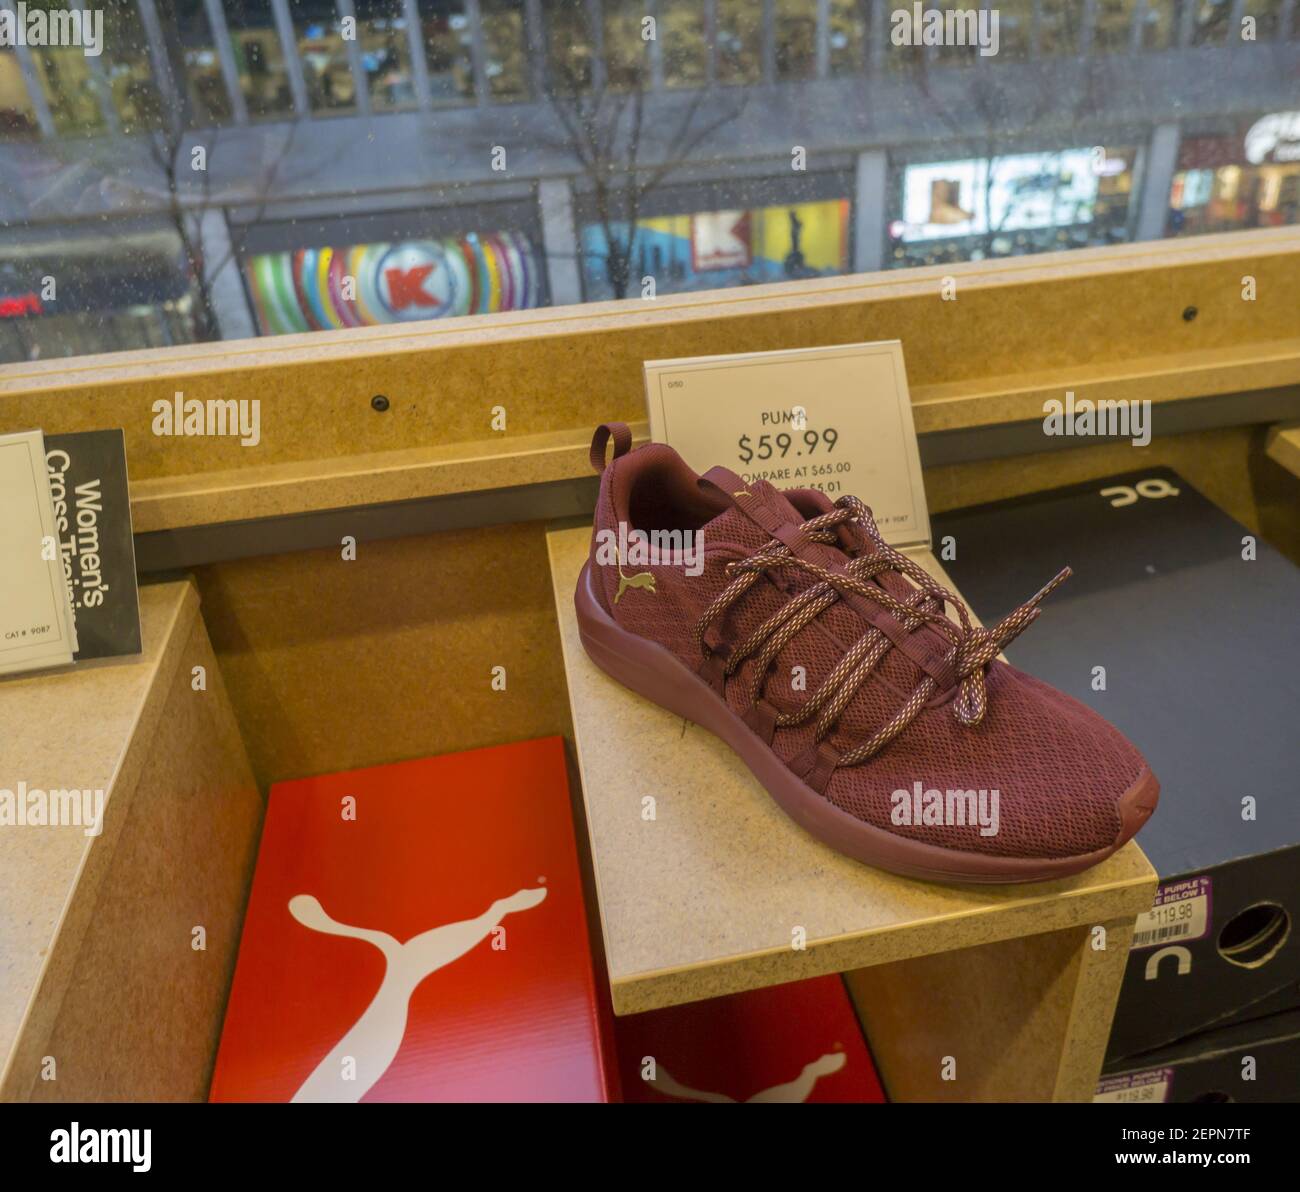 Un zapatero de Marca Puma en exhibición en una tienda de zapatos en Nueva  York el viernes, 12 de enero de 2018. La empresa francesa Kering se  desvenderá de Puma, devolviendo el